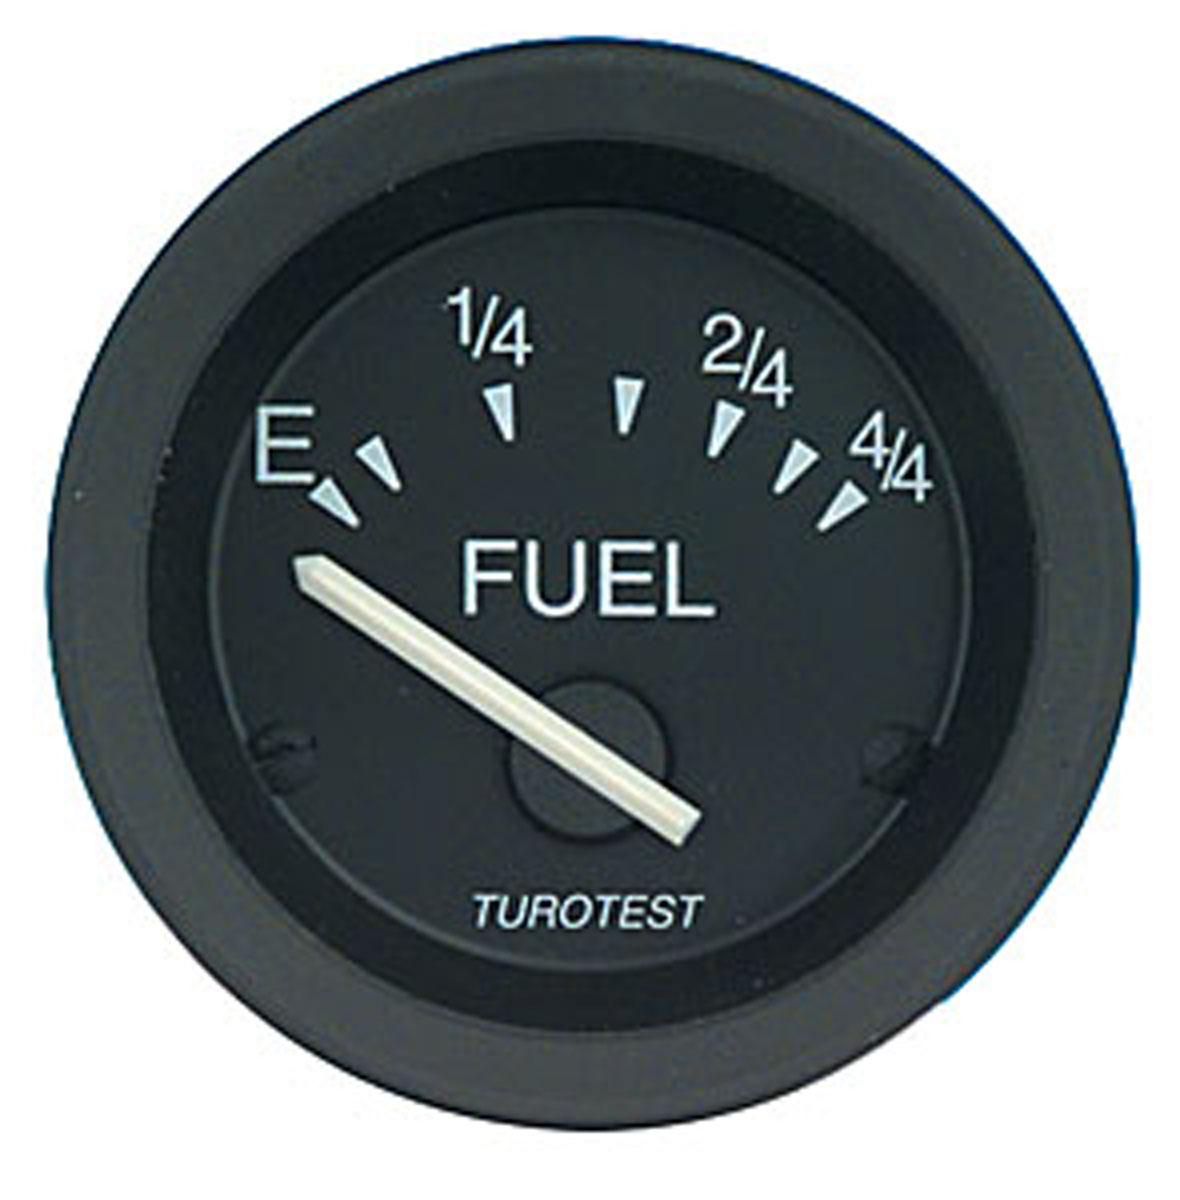 Rundmeßinstrument Fuel 52 (10-180) Type Fuel /52mm (E-1/4-1/